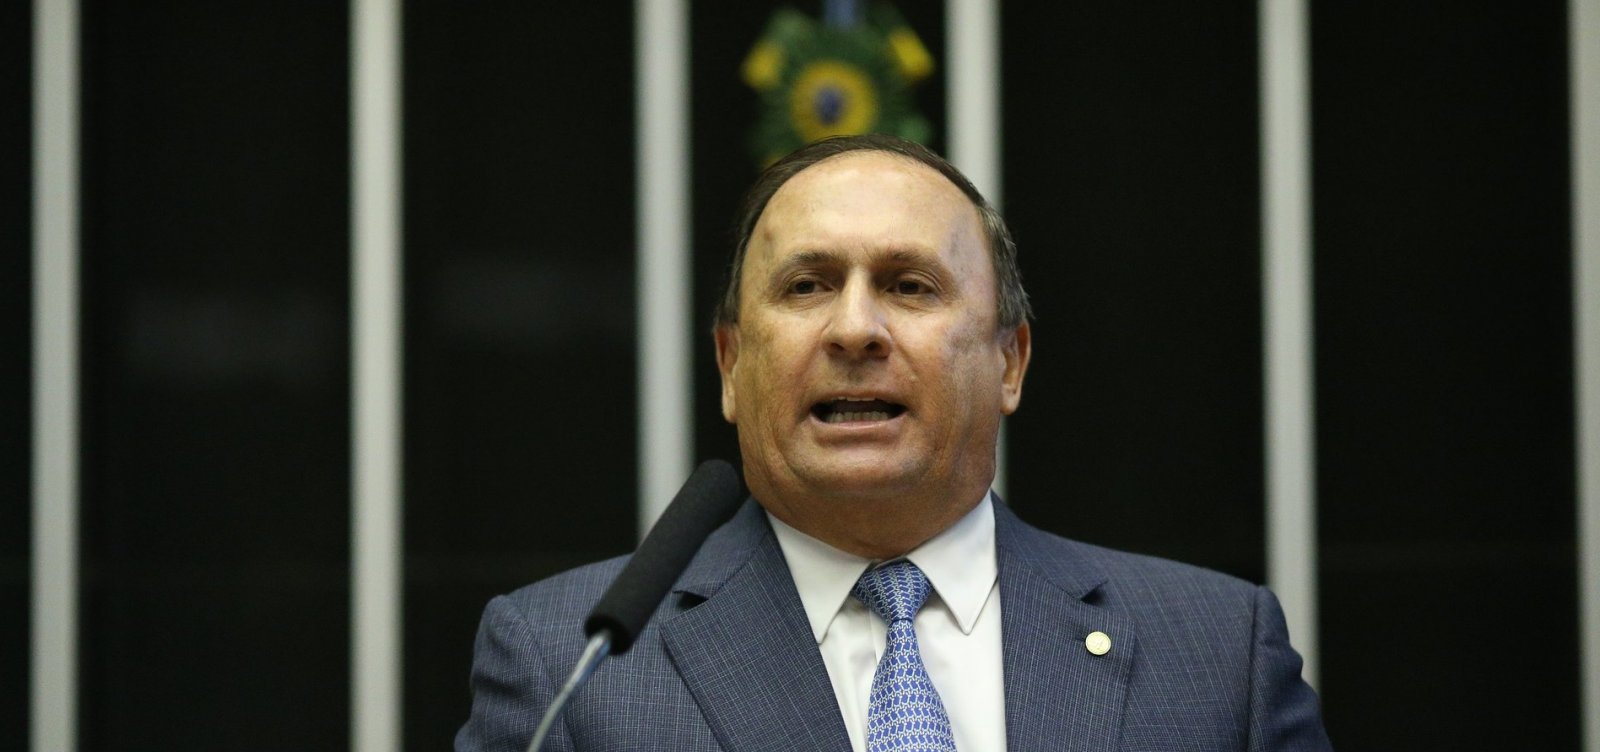 Gualberto diz que PSDB 'pagou caro' por apoiar governo Temer: 'Incoerência'